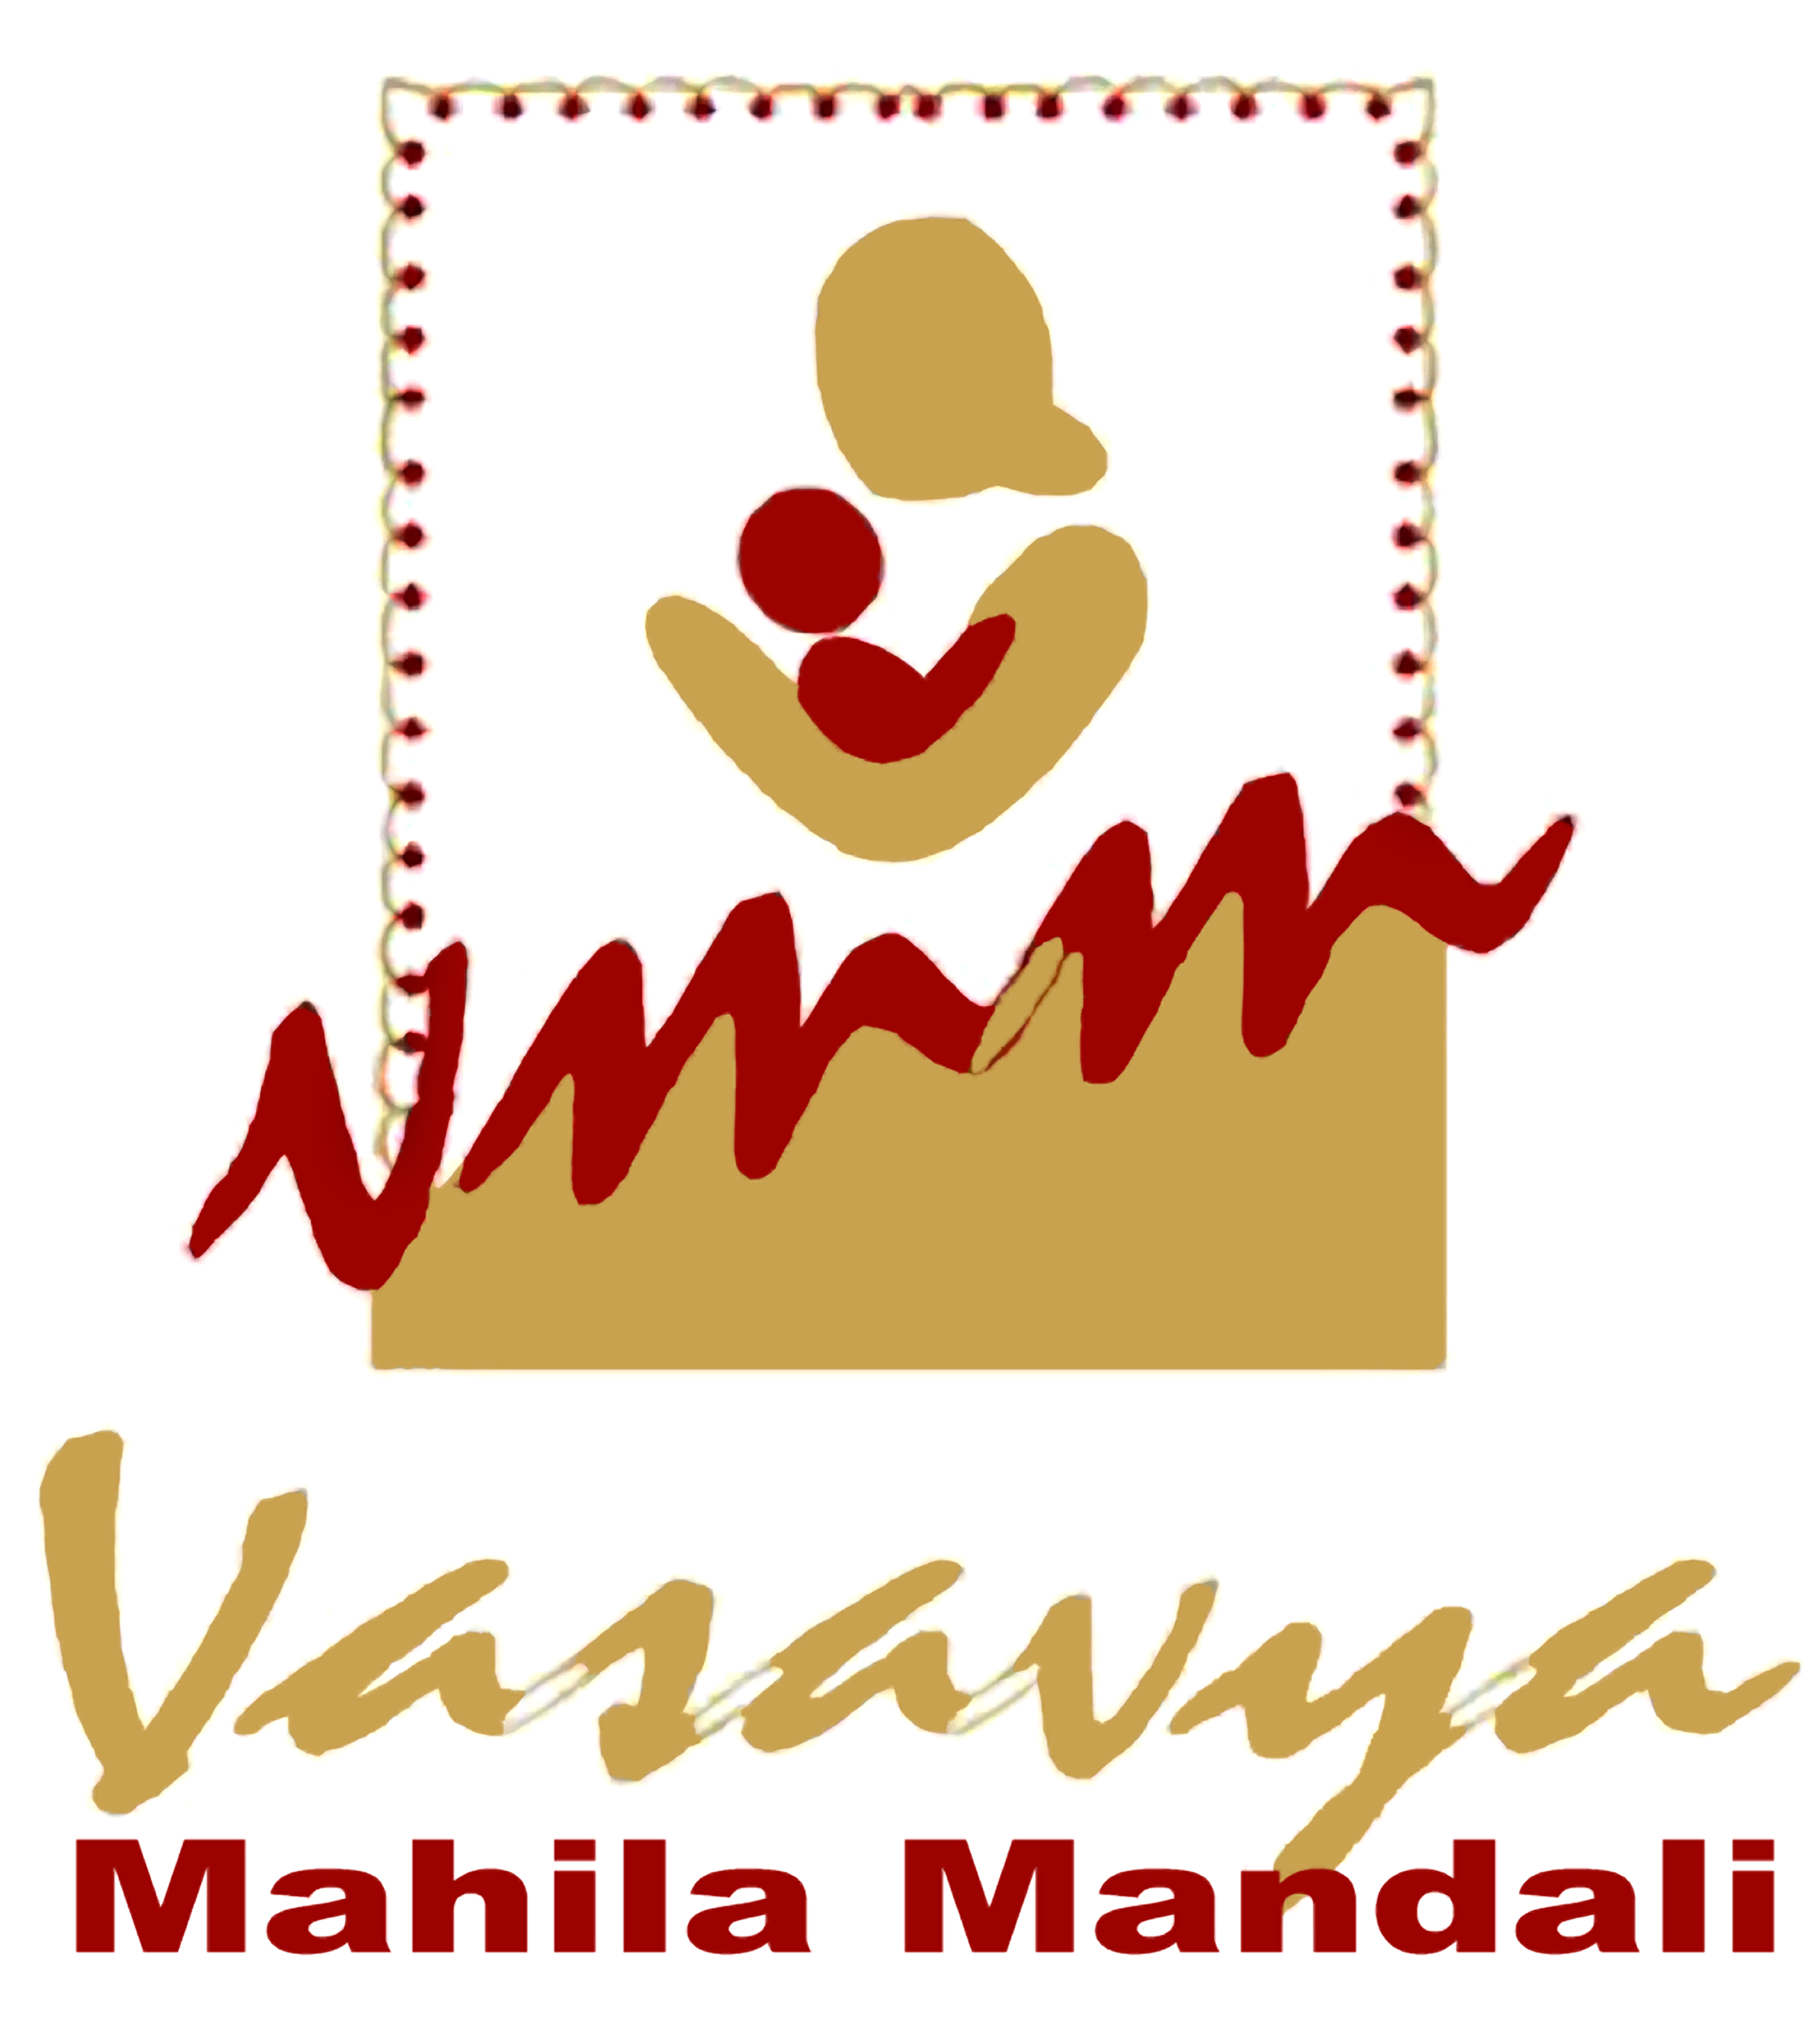 Vasavya Mahila Mandali (VMM)